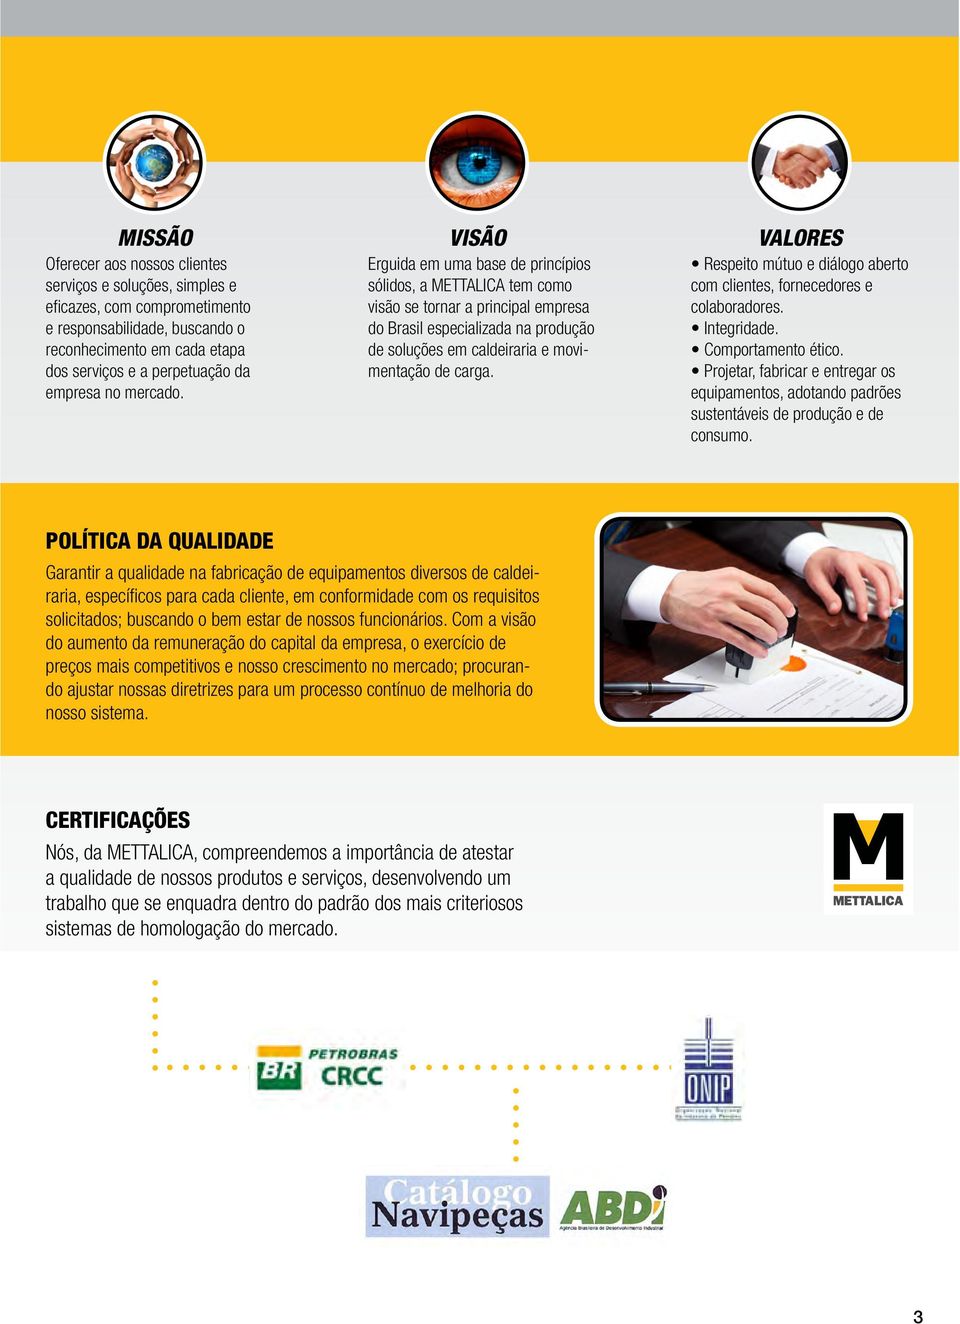 Erguida em uma base de princípios sólidos, a METTALICA tem como visão se tornar a principal empresa do Brasil especializada na produção de soluções em caldeiraria e movimentação de carga.